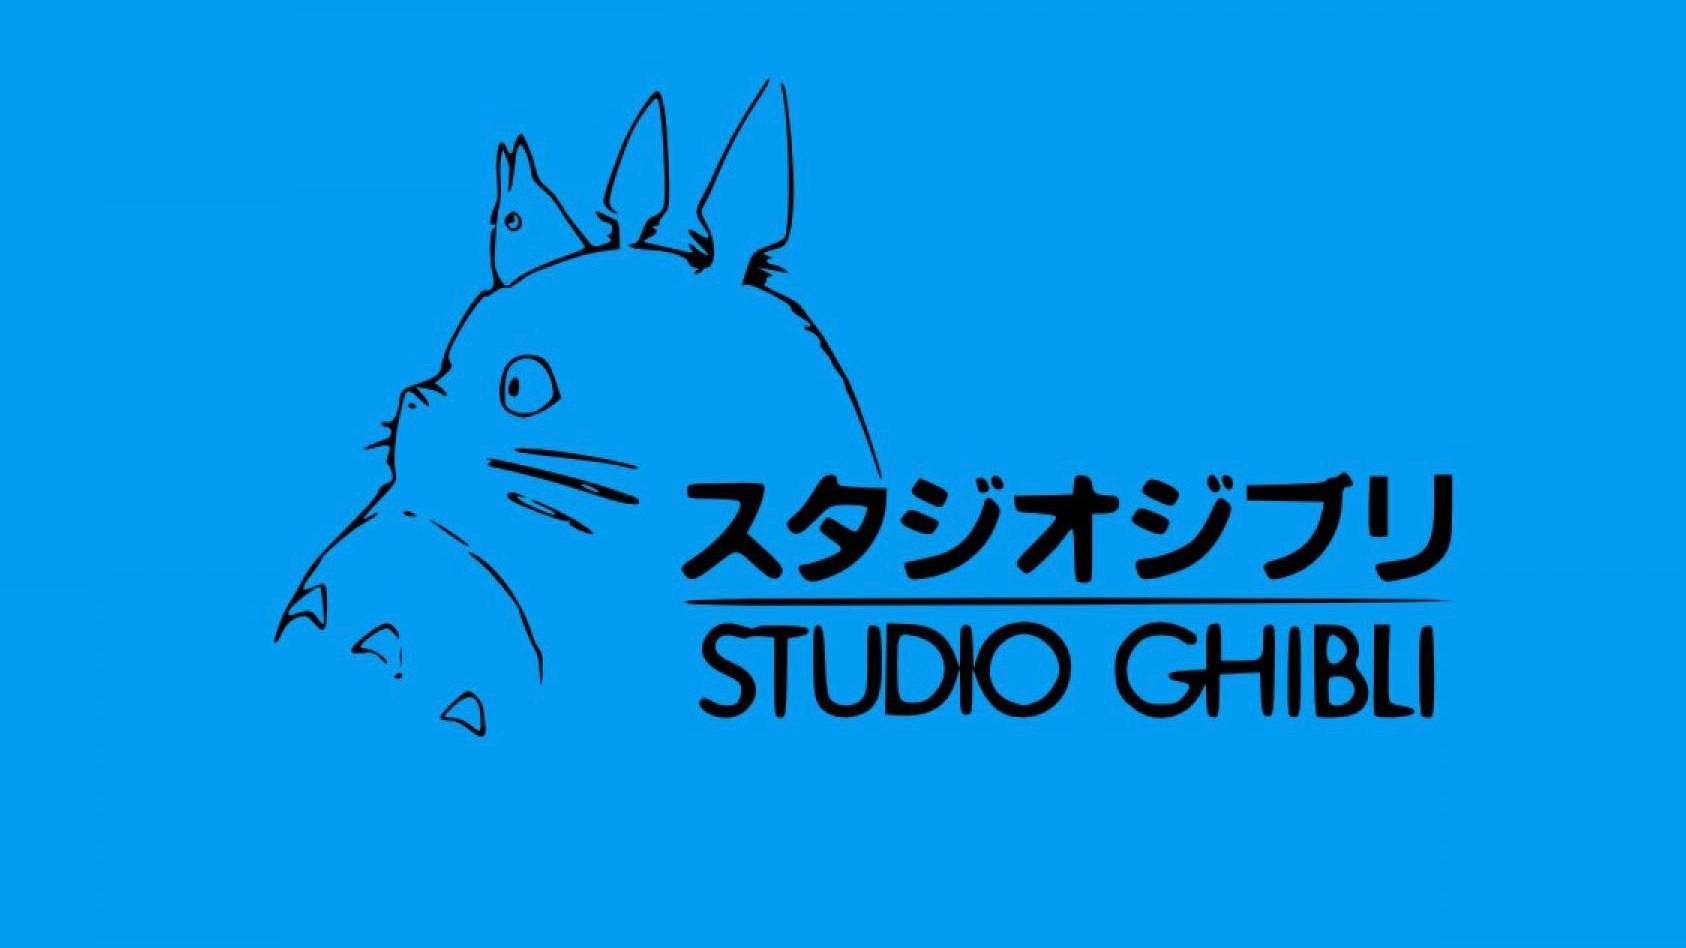 The Studio Ghibli logo.